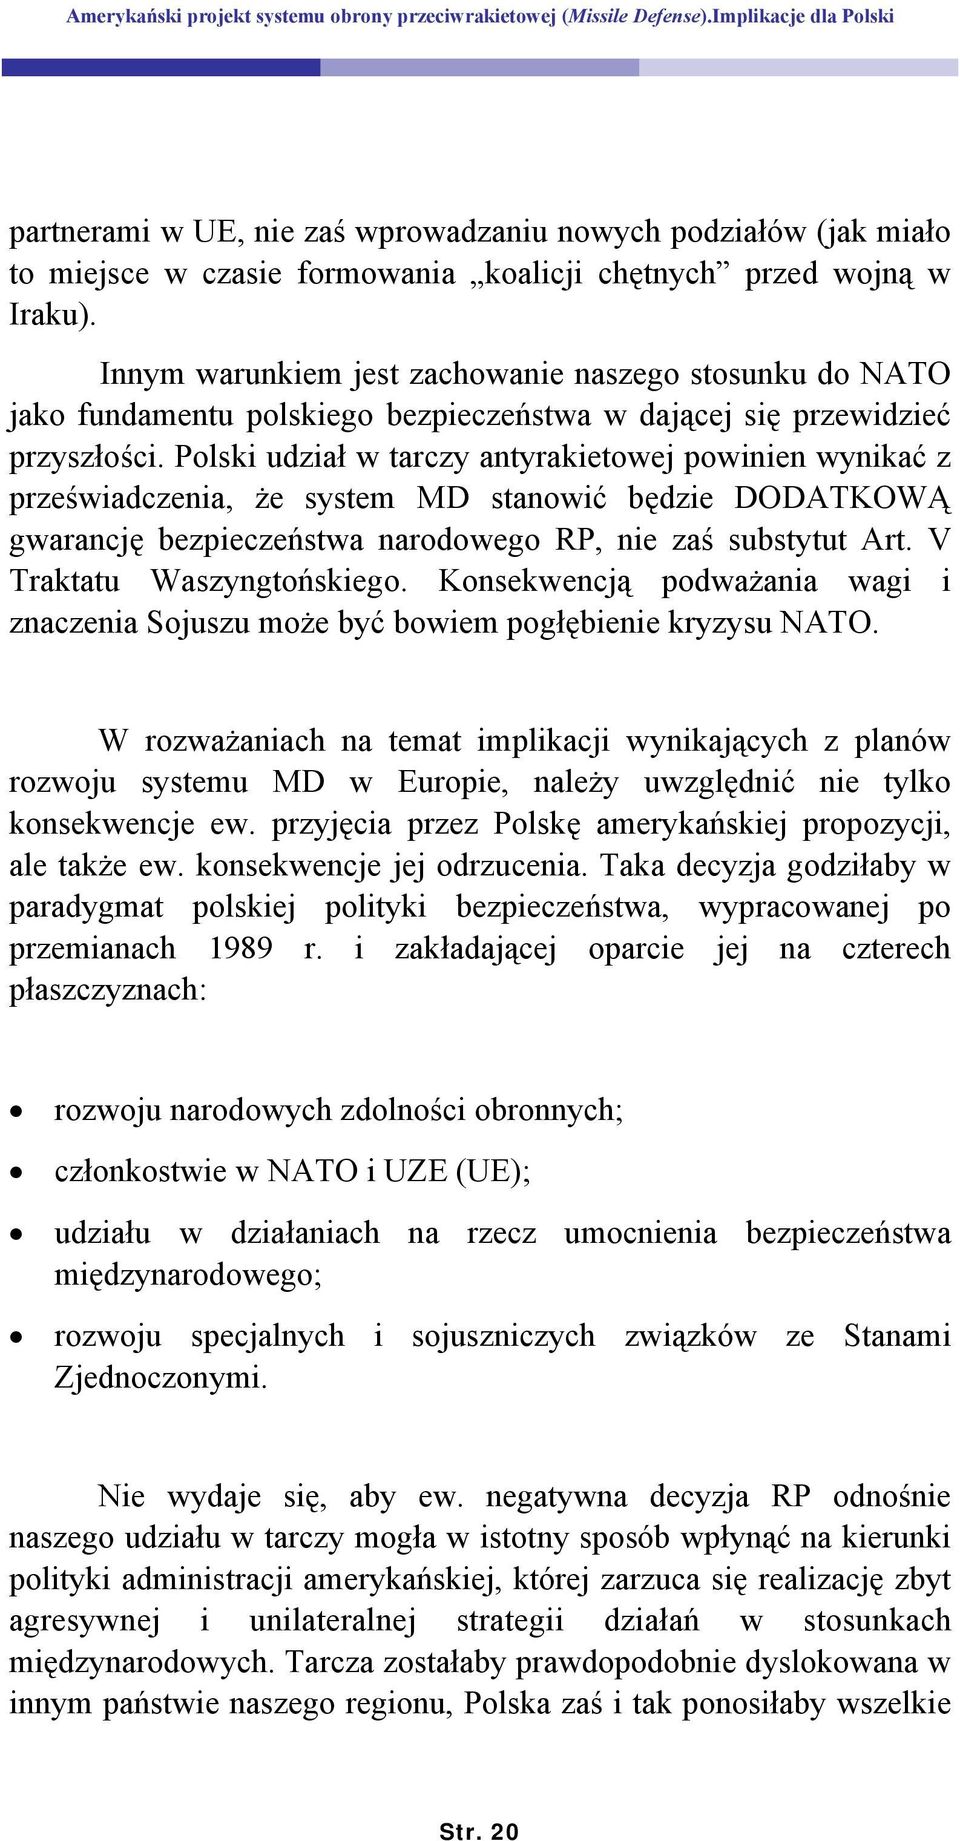 Polski udział w tarczy antyrakietowej powinien wynikać z przeświadczenia, że system MD stanowić będzie DODATKOWĄ gwarancję bezpieczeństwa narodowego RP, nie zaś substytut Art.